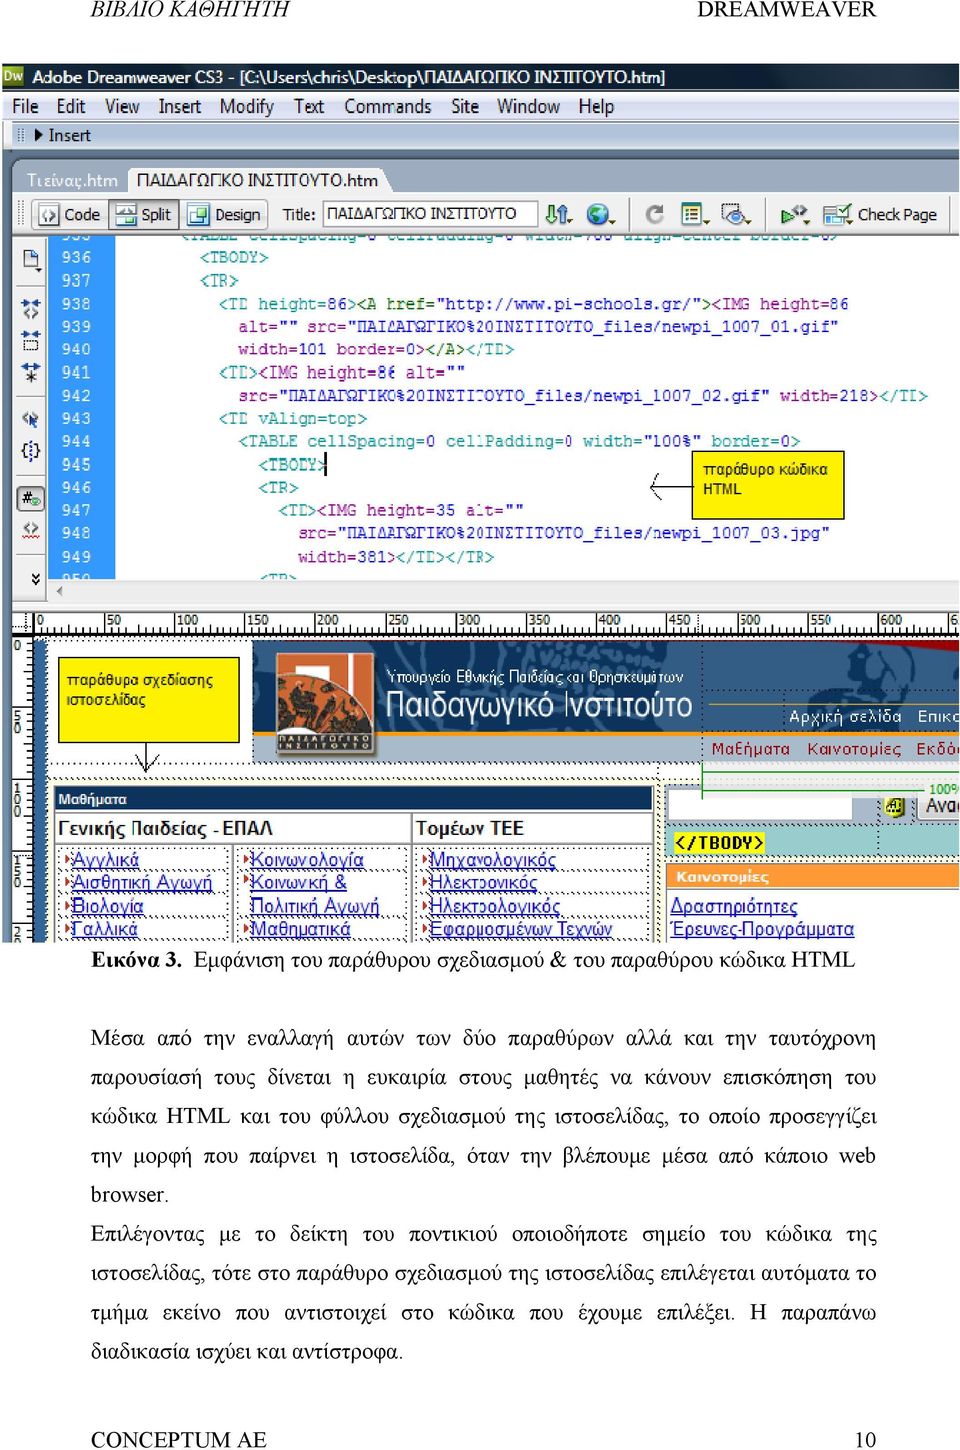 ευκαιρία στους μαθητές να κάνουν επισκόπηση του κώδικα HTML και του φύλλου σχεδιασμού της ιστοσελίδας, το οποίο προσεγγίζει την μορφή που παίρνει η ιστοσελίδα,